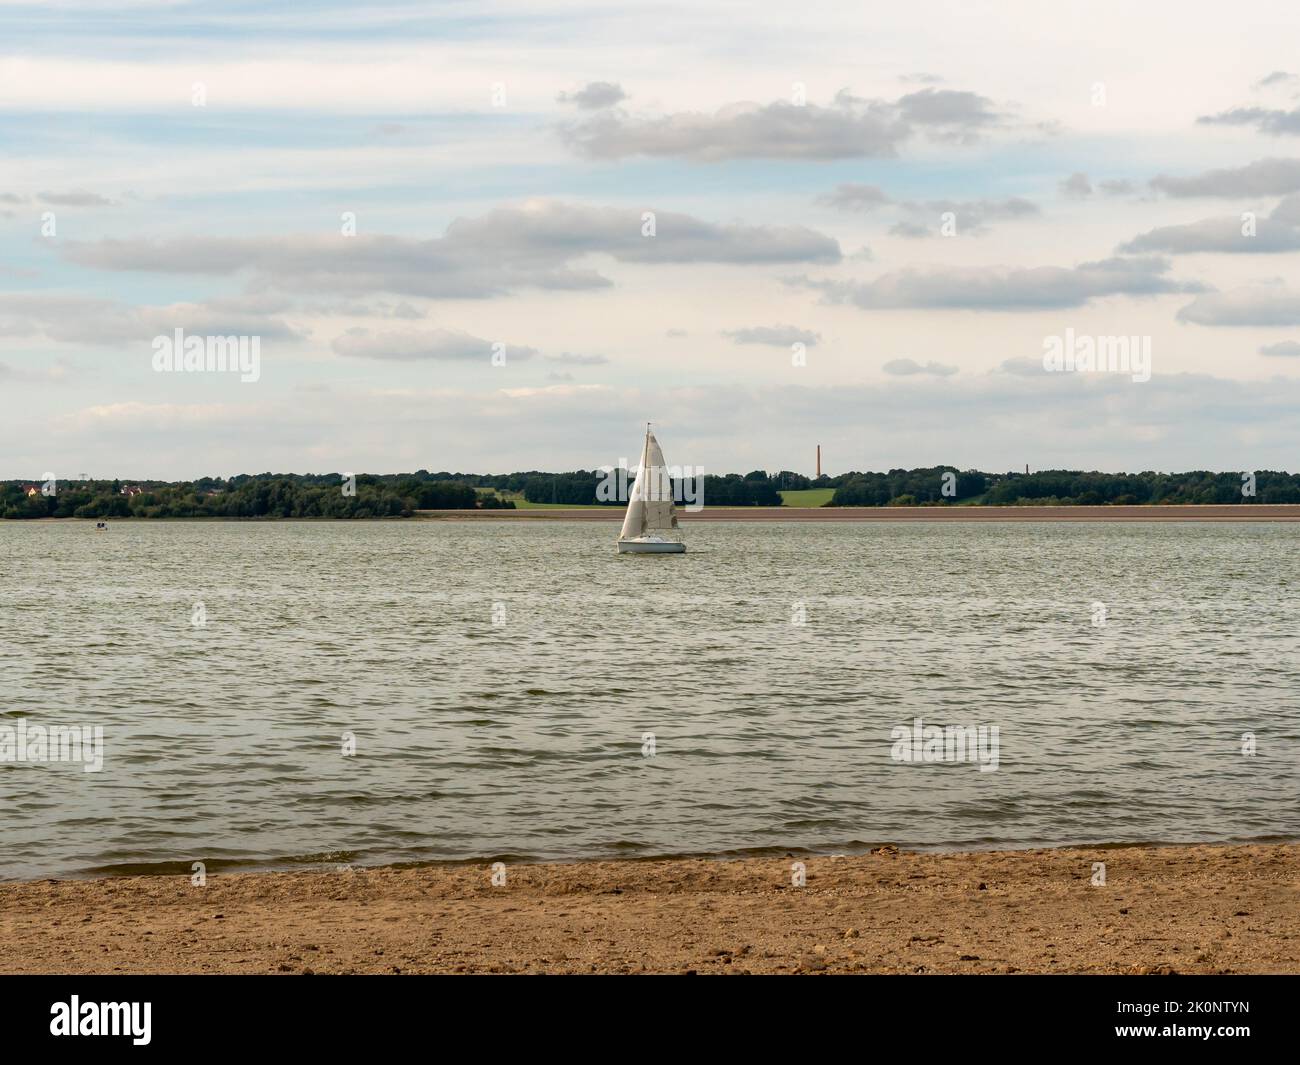 Bateau à voile sur un lac en Allemagne. Bateau blanc avec une grande voile sur l'eau calme. Transport sur l'eau. Paysage naturel avec un bateau au centre. Banque D'Images